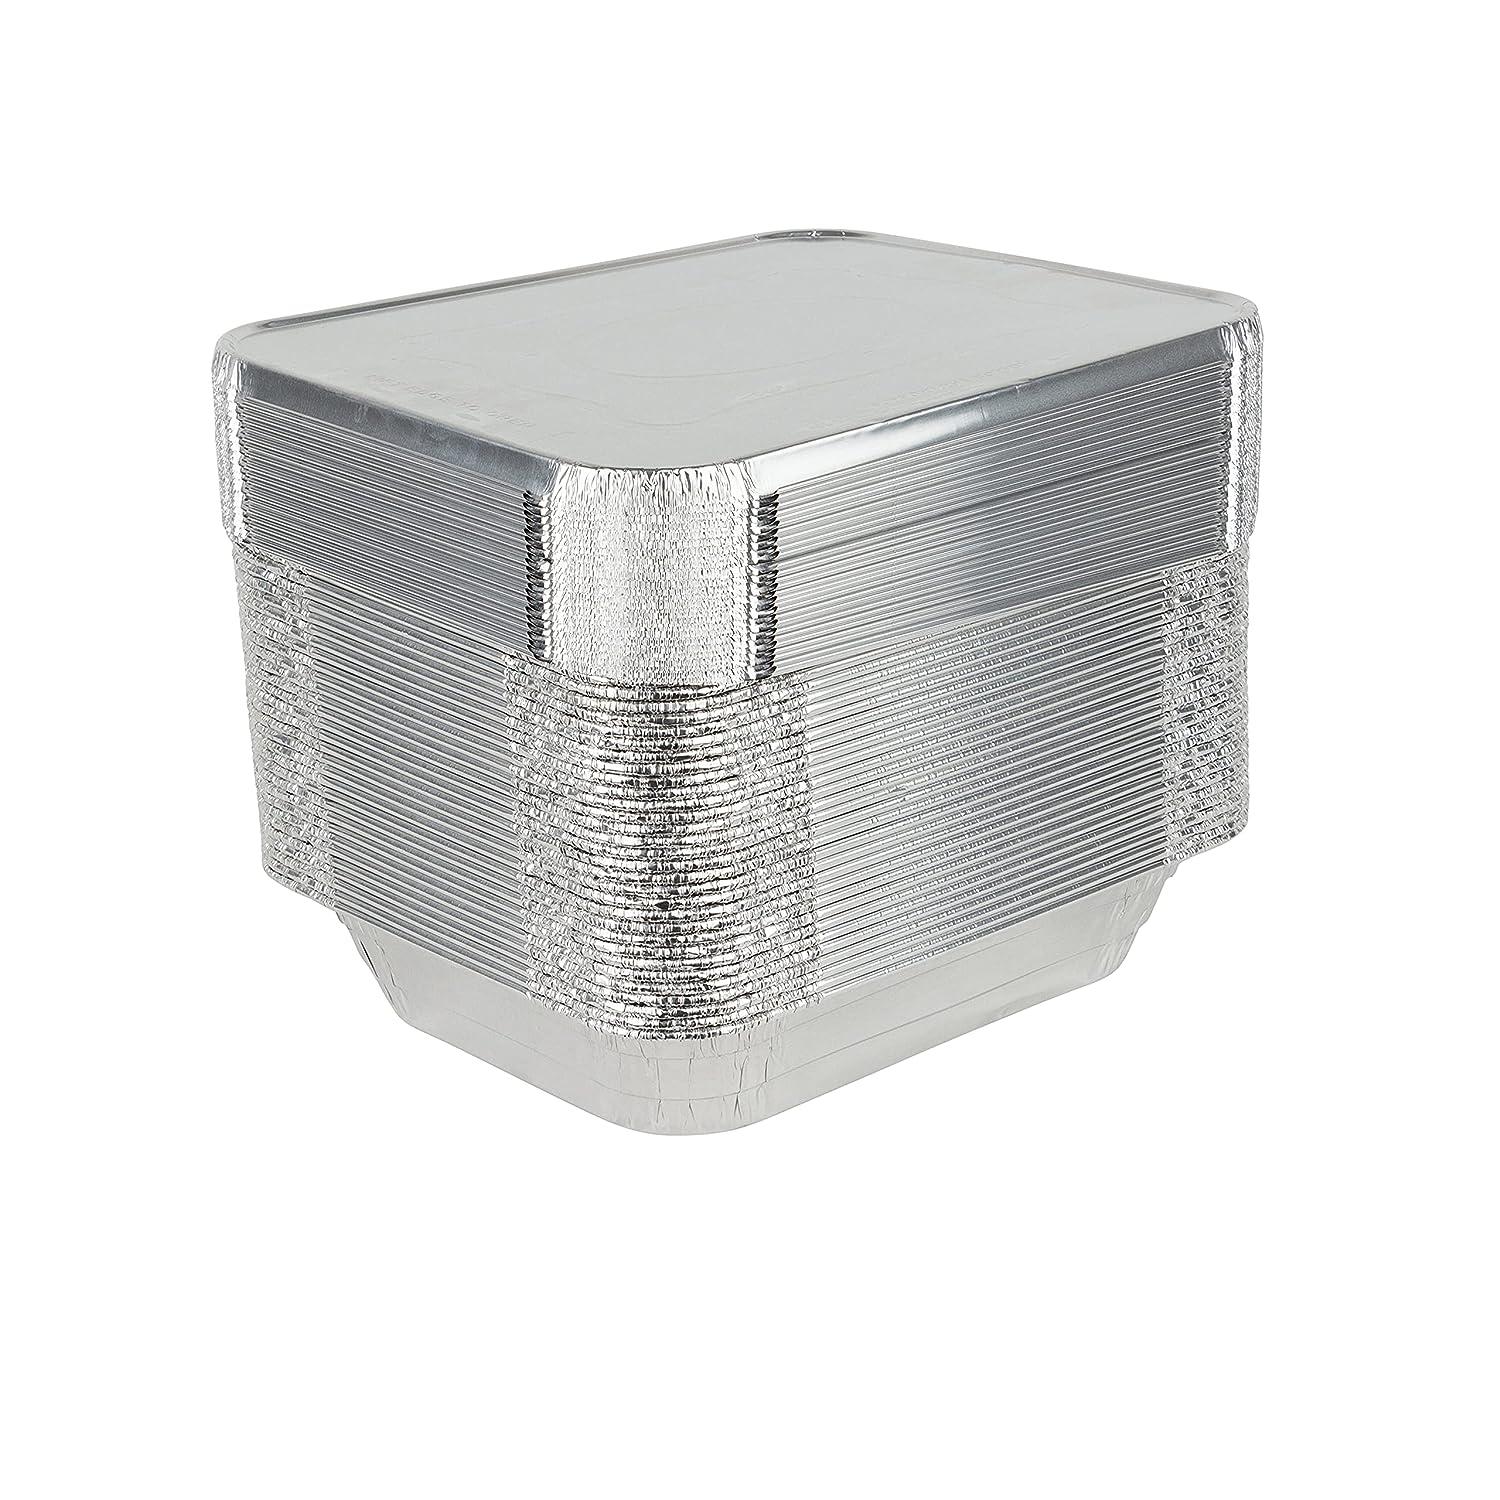 Stock Your Home Aluminum Pans 9x13 Disposable Foil Baking Pans (100 Pack)